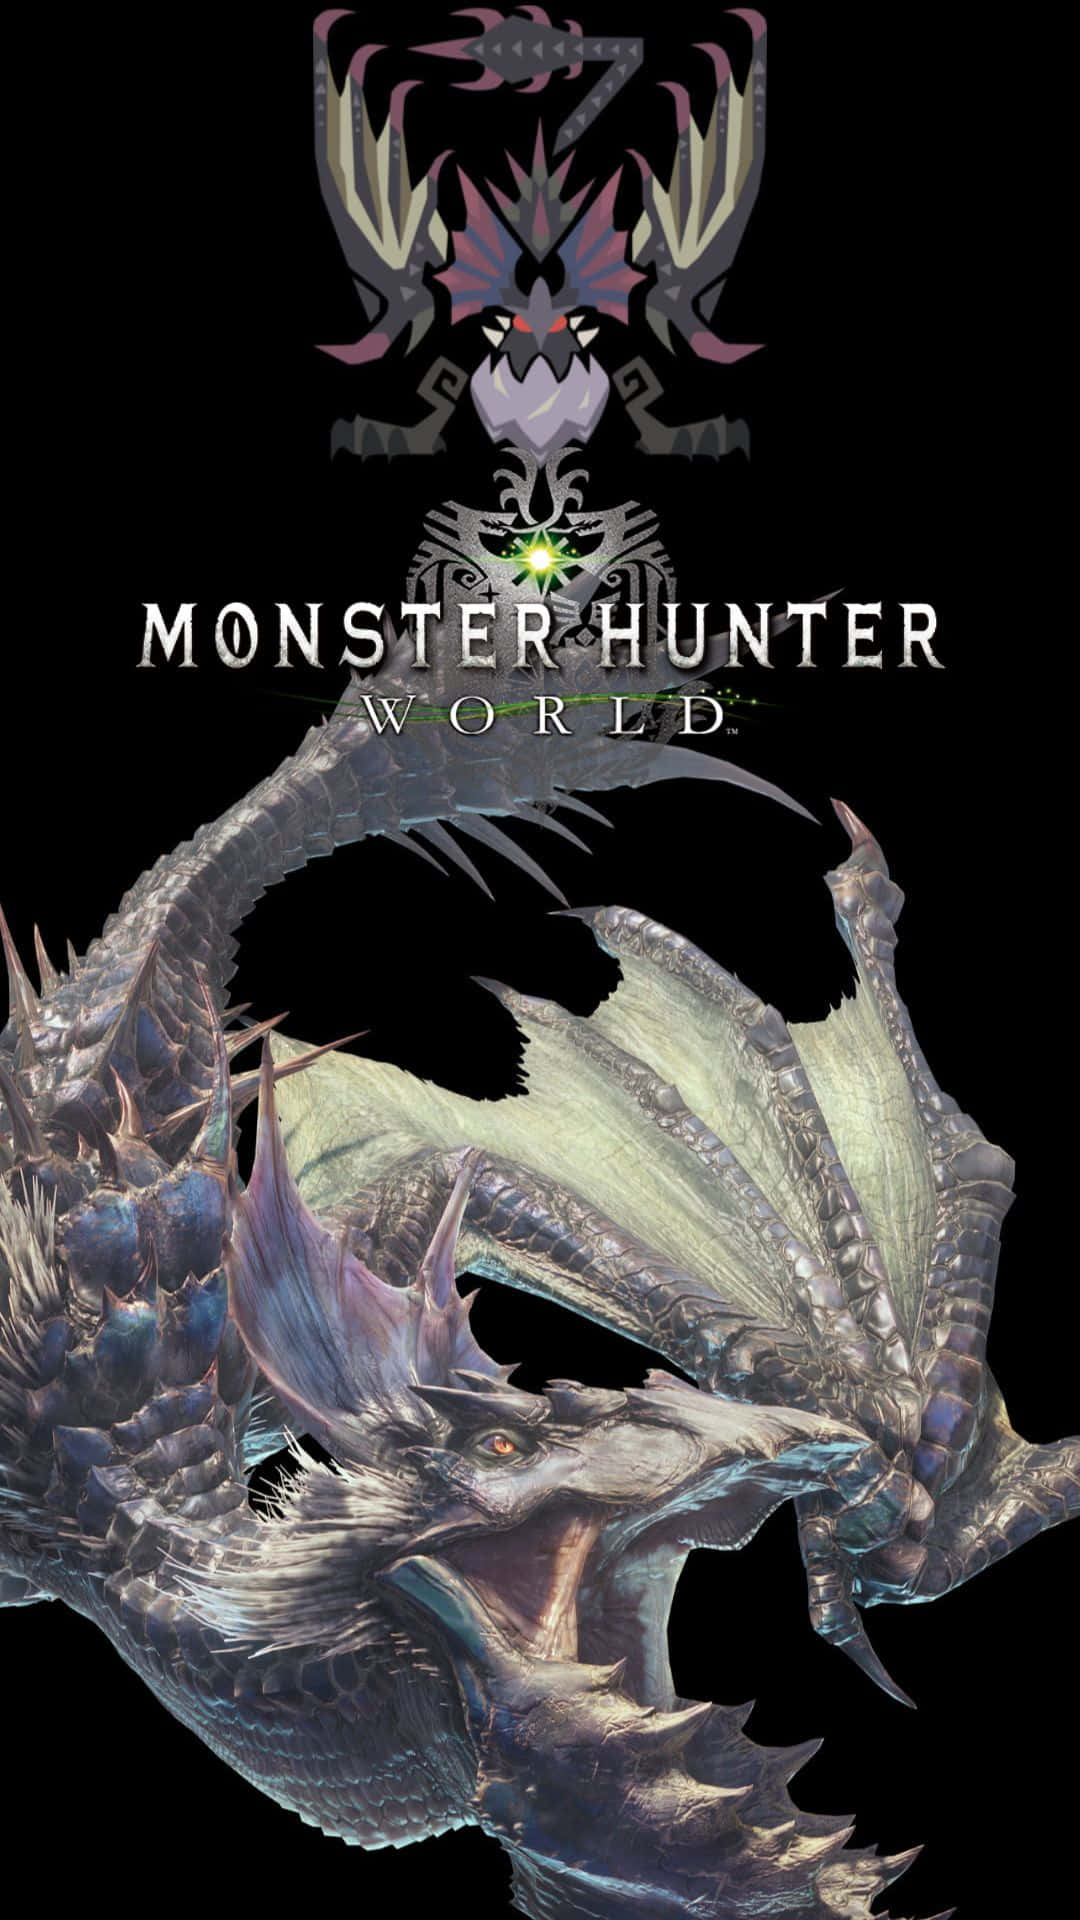 Gedig Ut På Episka Äventyr I Monster Hunter Världen.